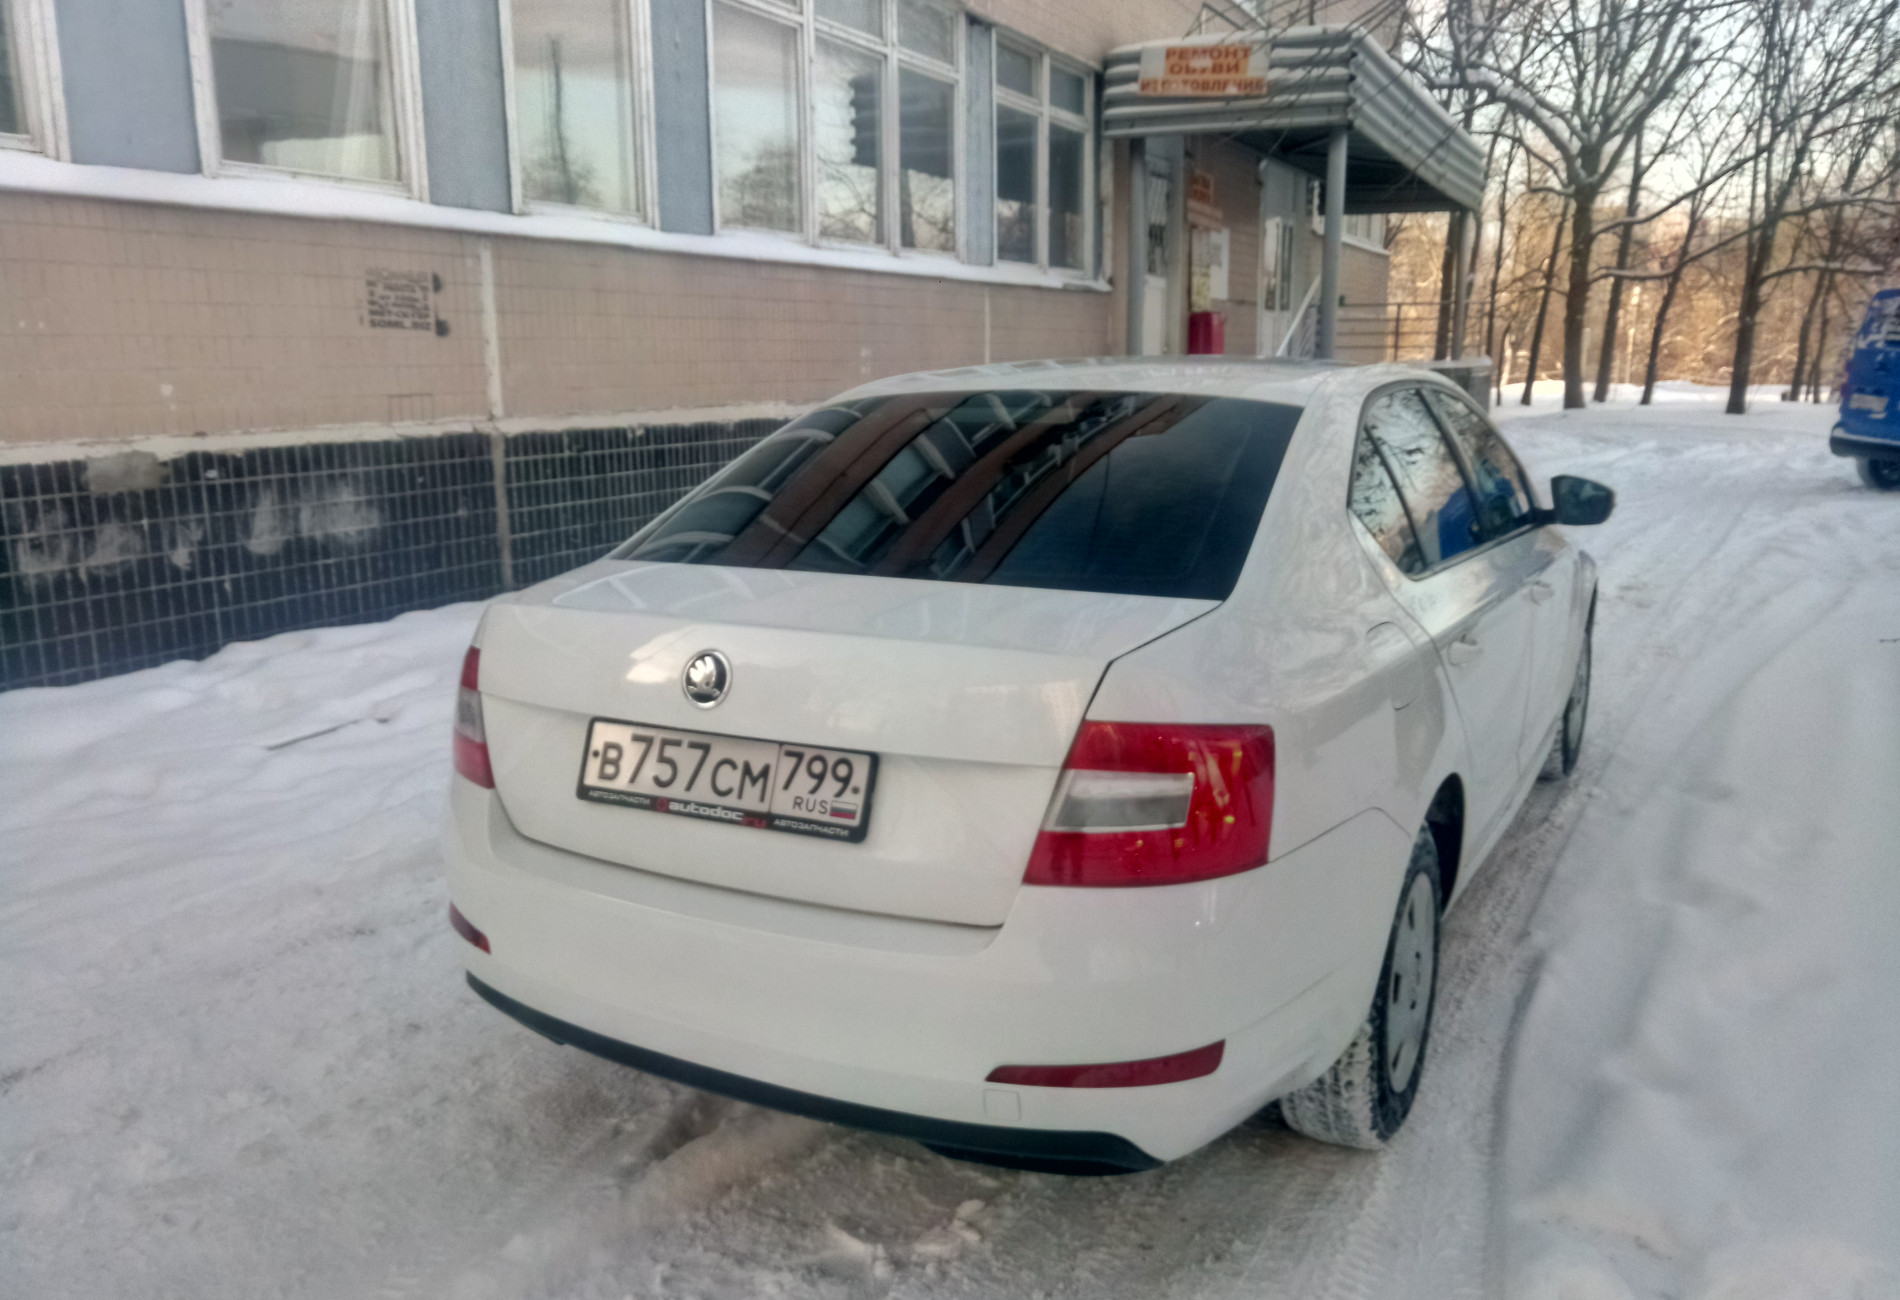 Аренда skoda octavia эконом класса 2015 года в городе Москва Ясенево от 1250 руб./сутки, передний привод, двигатель: бензин, объем 1.6 литров, ОСАГО (Мультидрайв), без водителя, недорого, вид 2 - RentRide